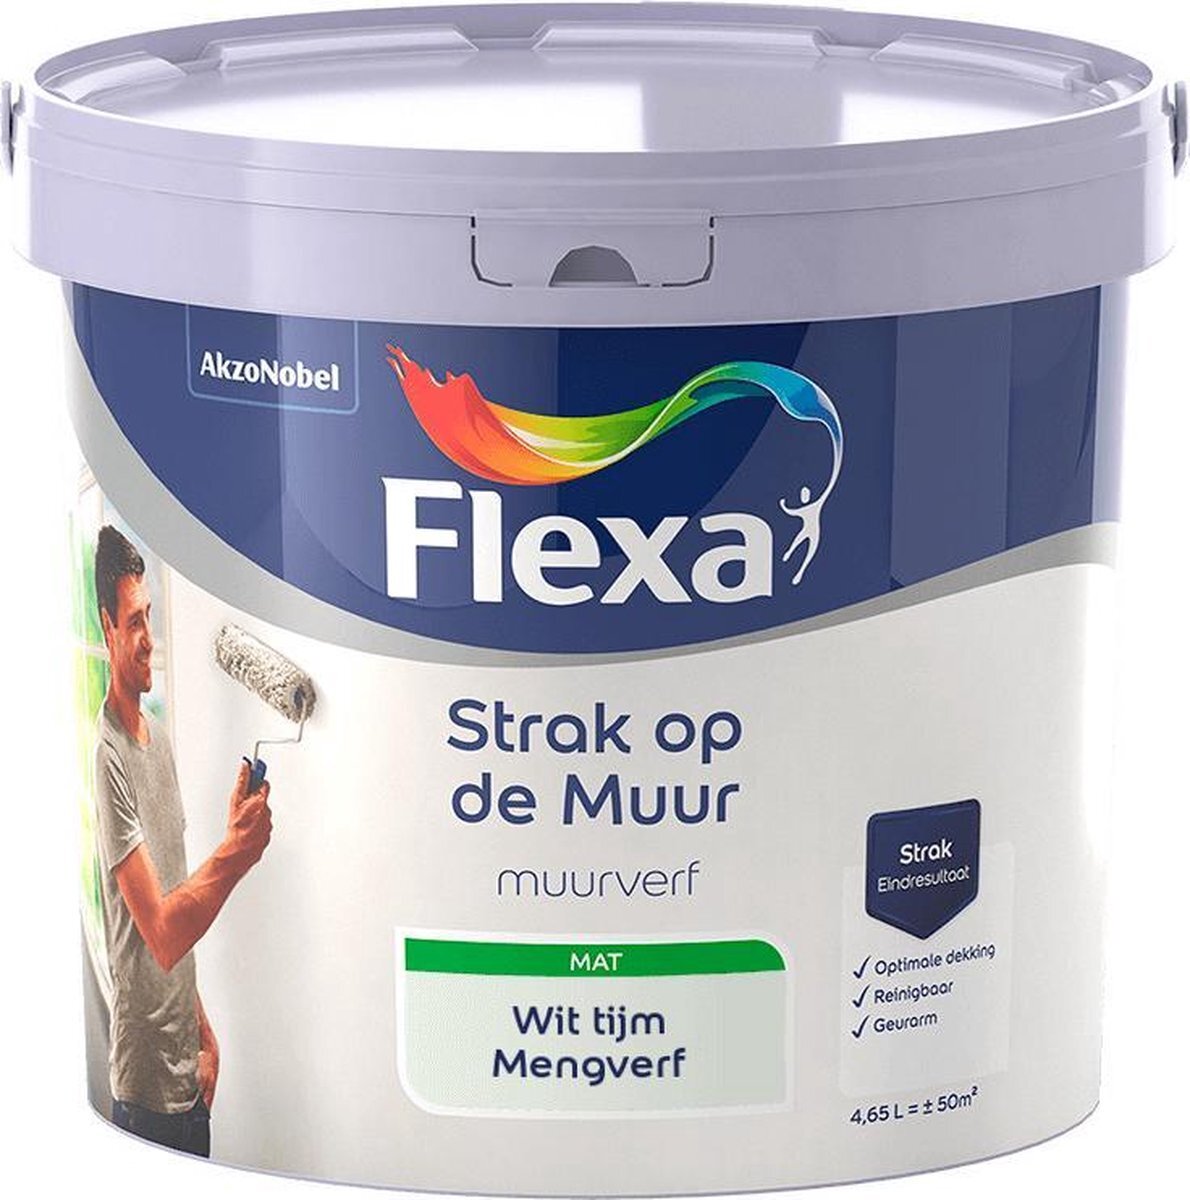 FLEXA Strak op de muur - Muurverf - Mengcollectie - Wit tijm - 5 Liter